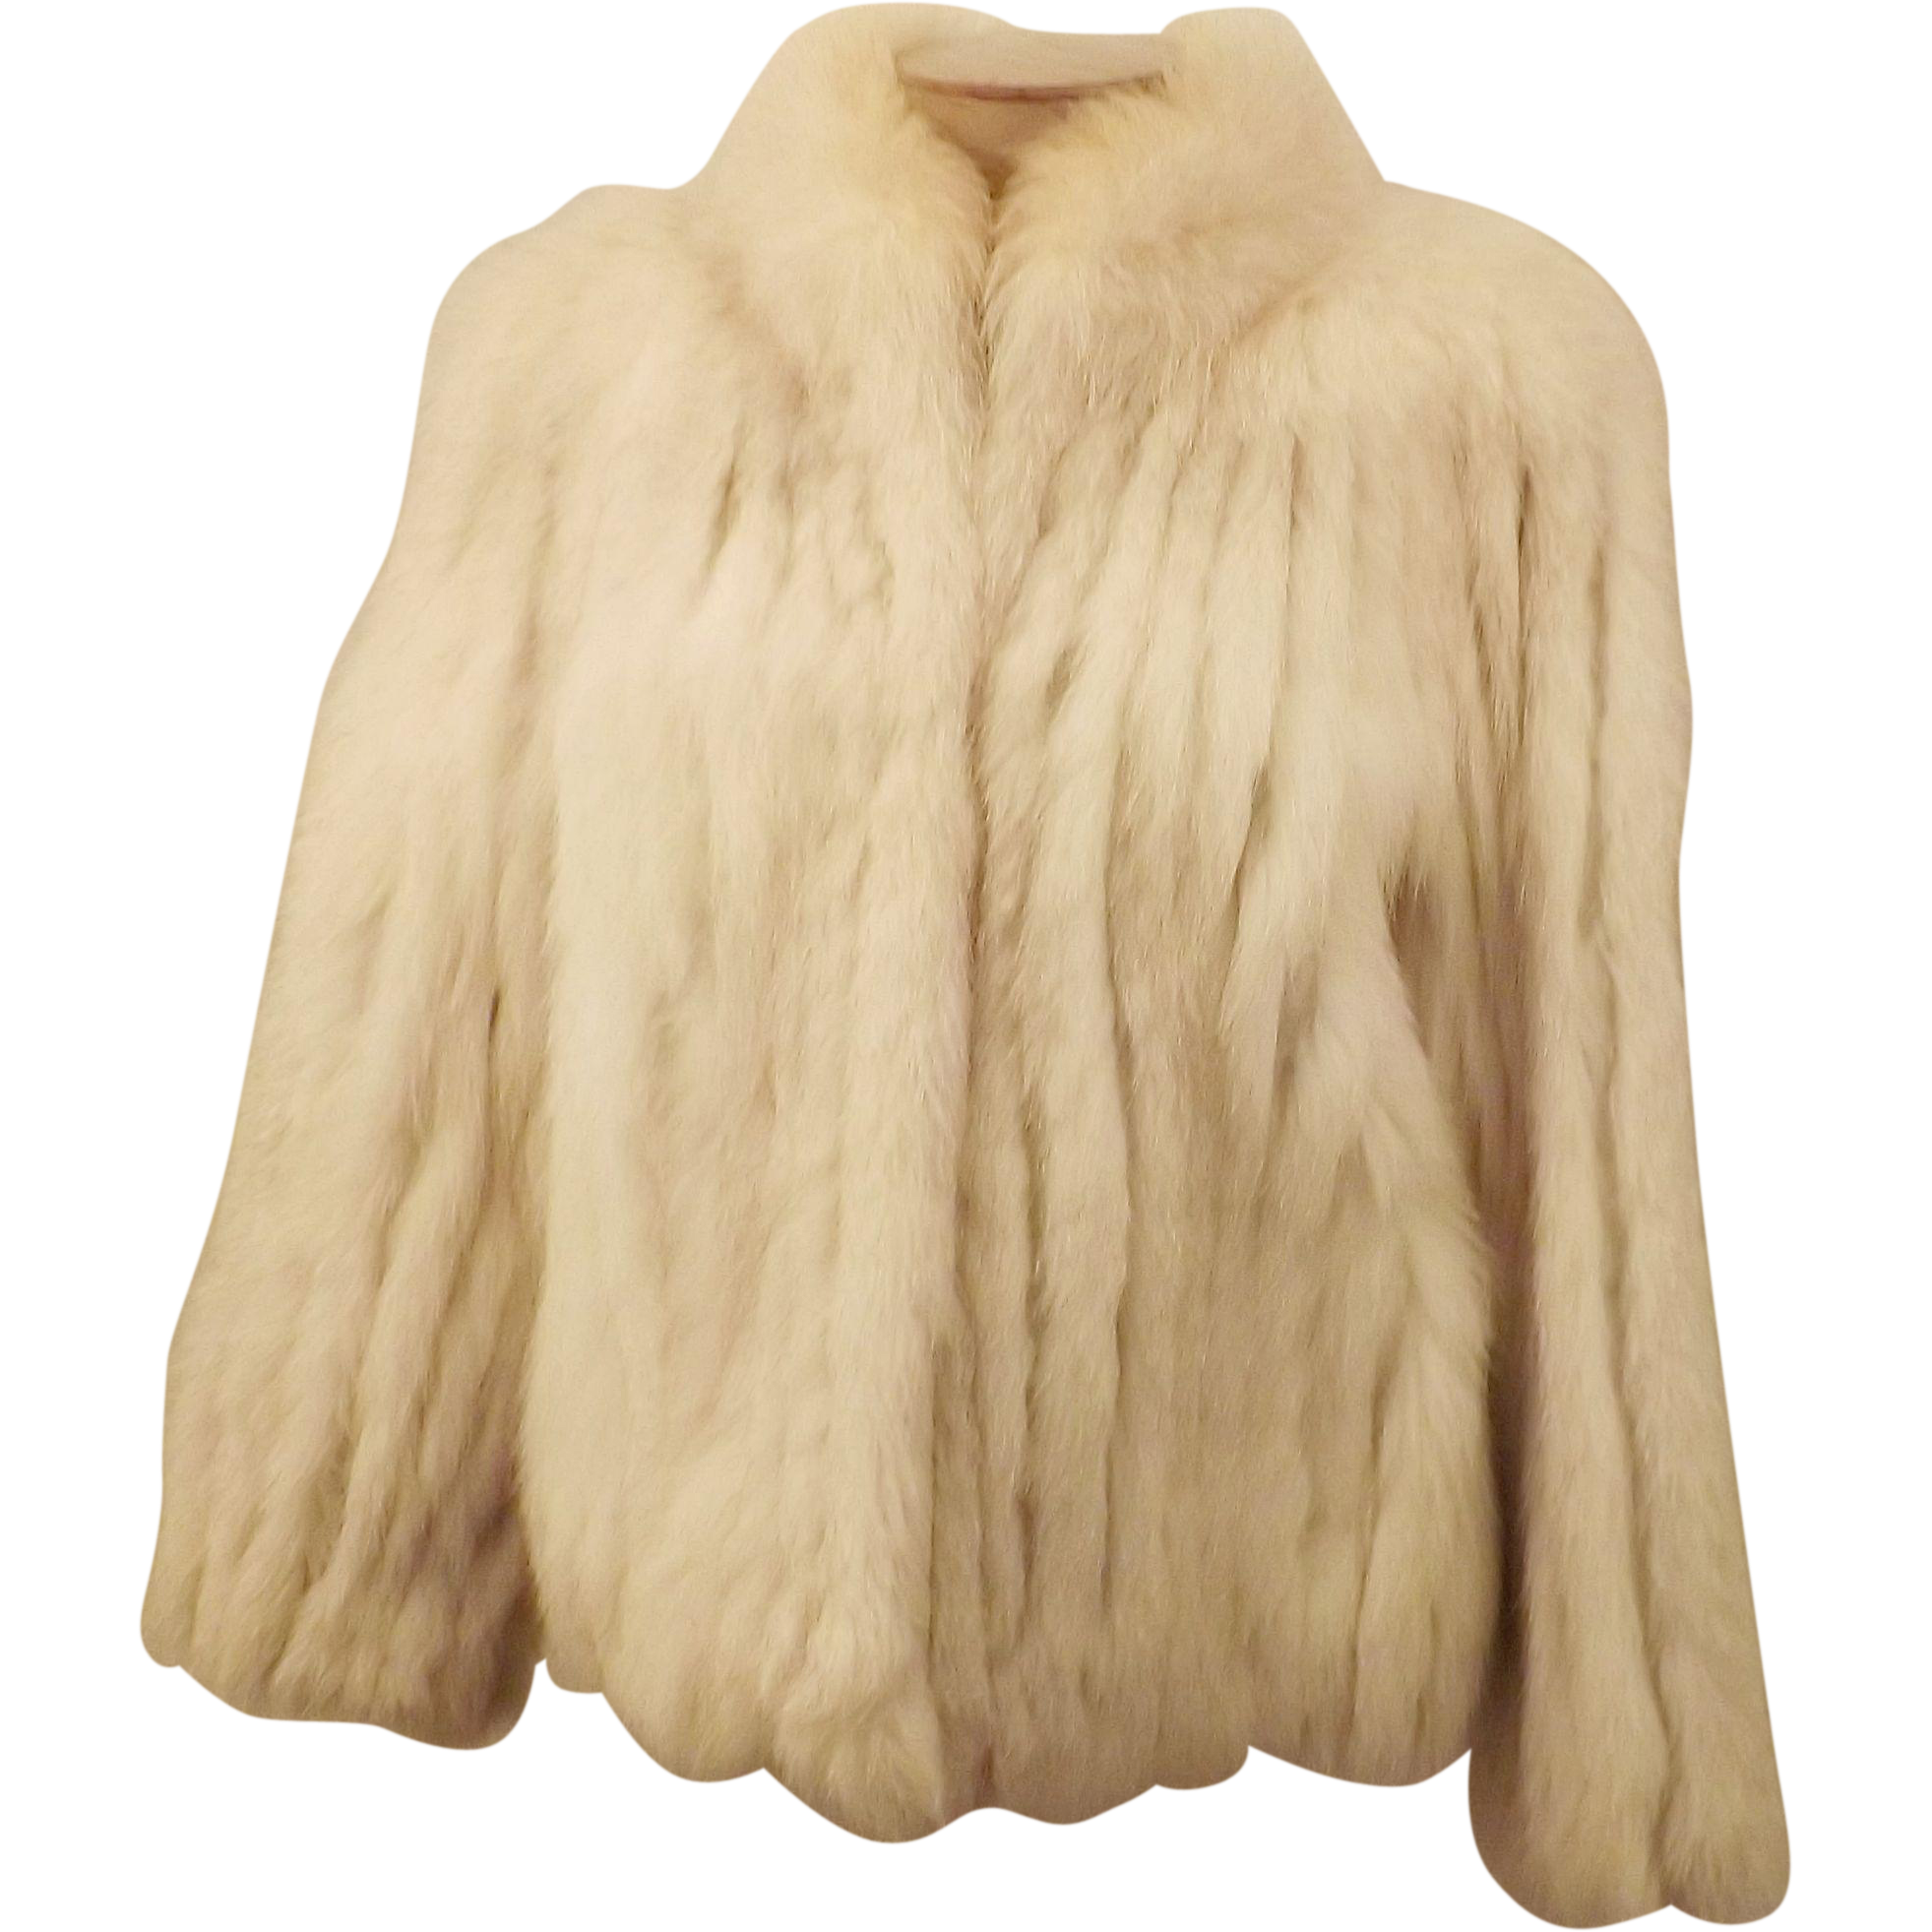 coat clipart animal fur